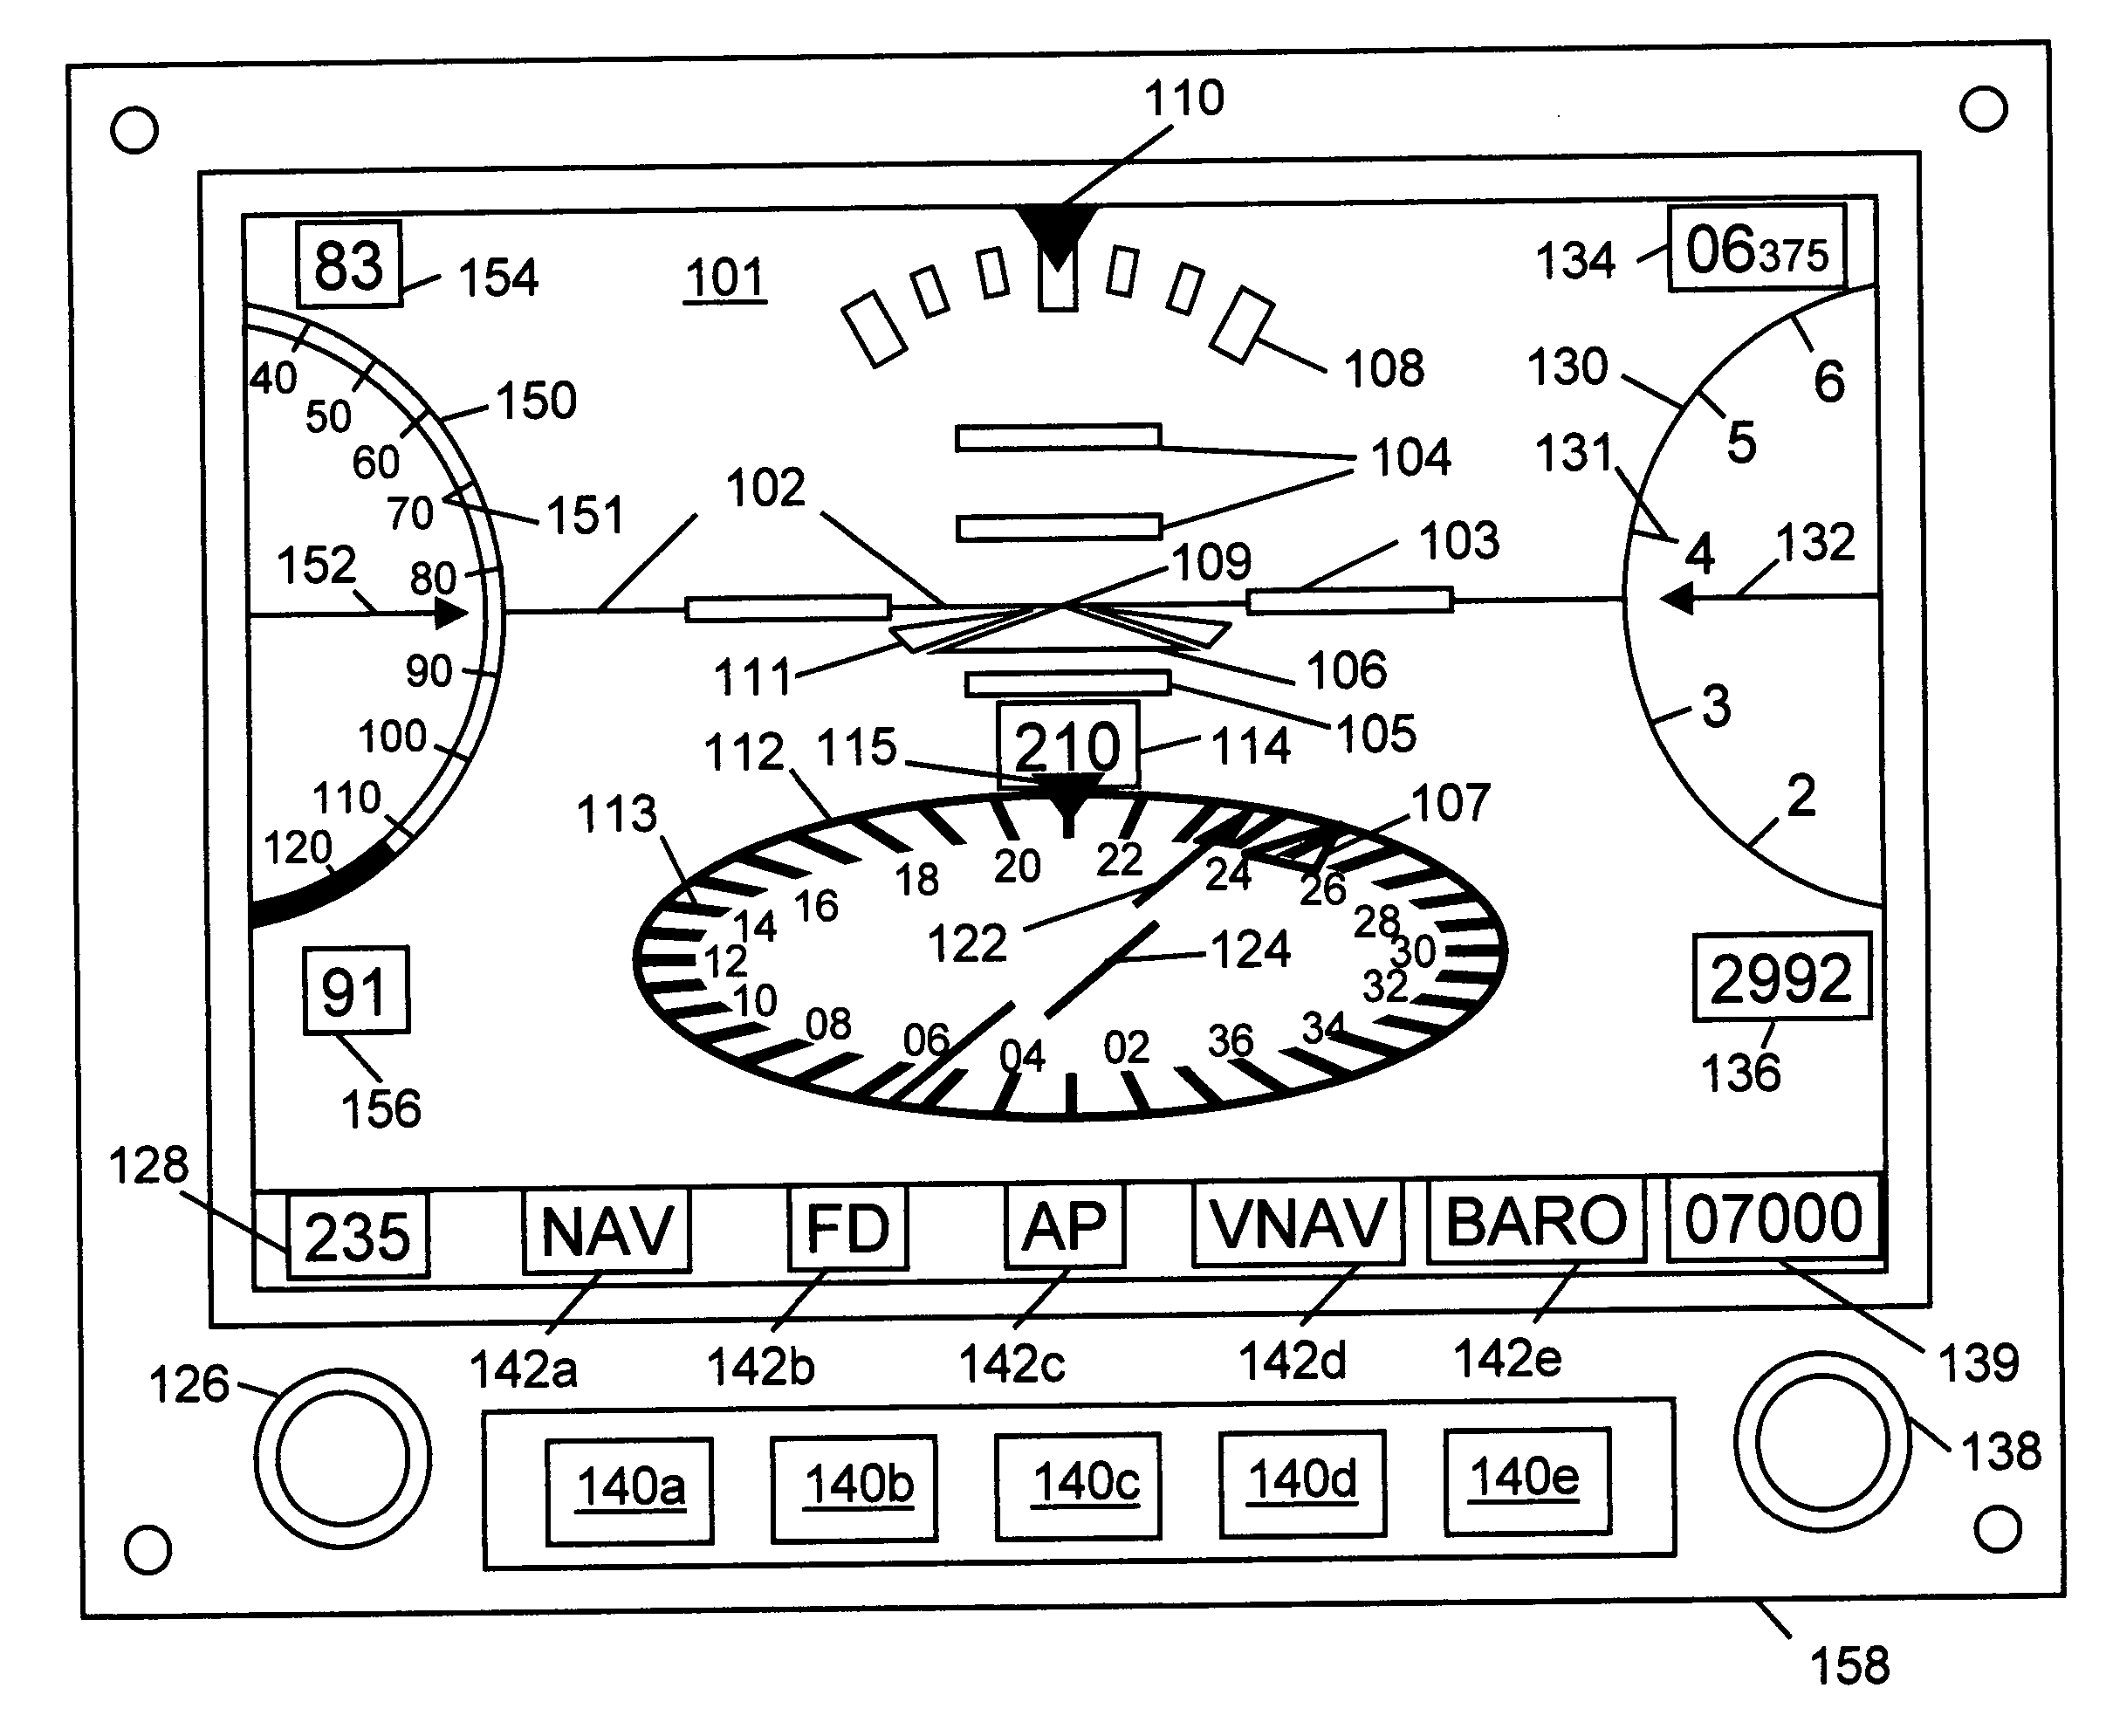 Flight information system